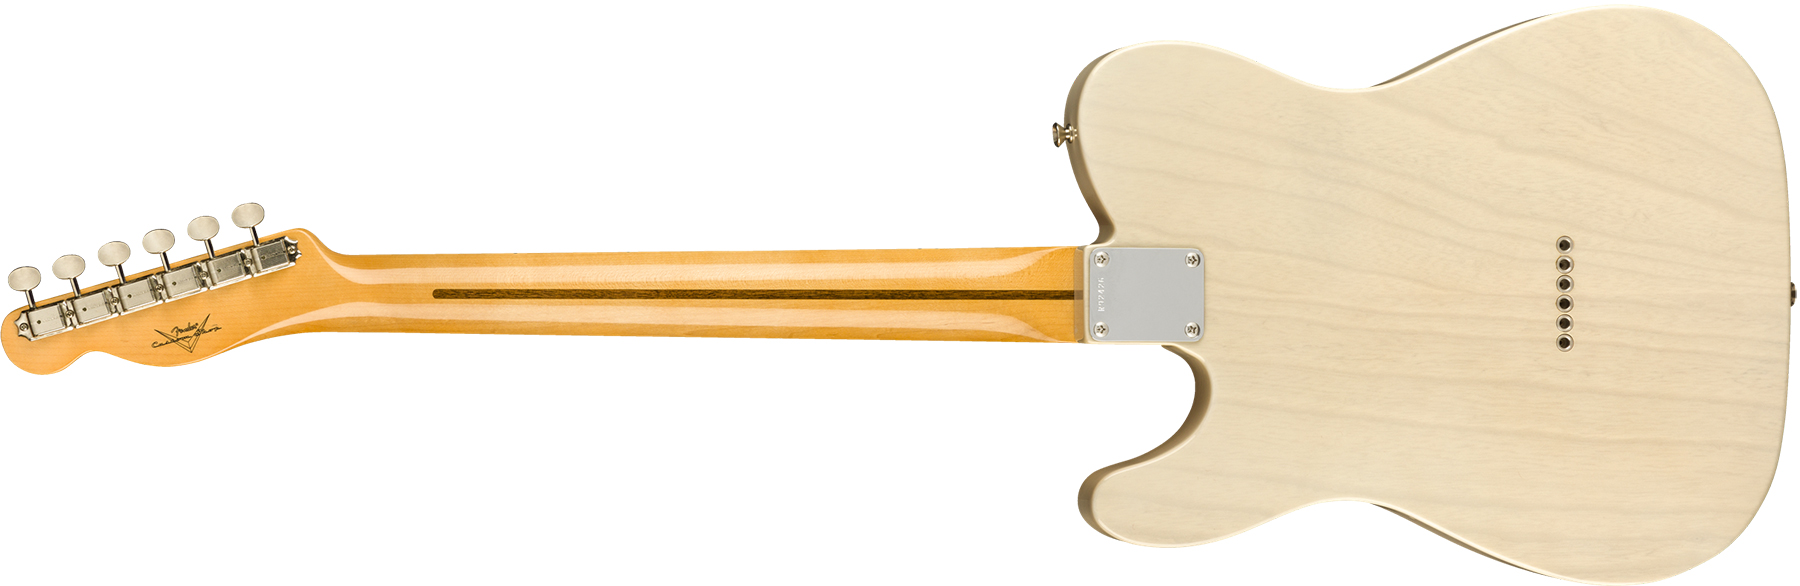 Fender Custom Shop Tele Vintage Custom 1958 Top Load Ltd Mn - Nos Aged White Blonde - Tel shape electric guitar - Variation 1